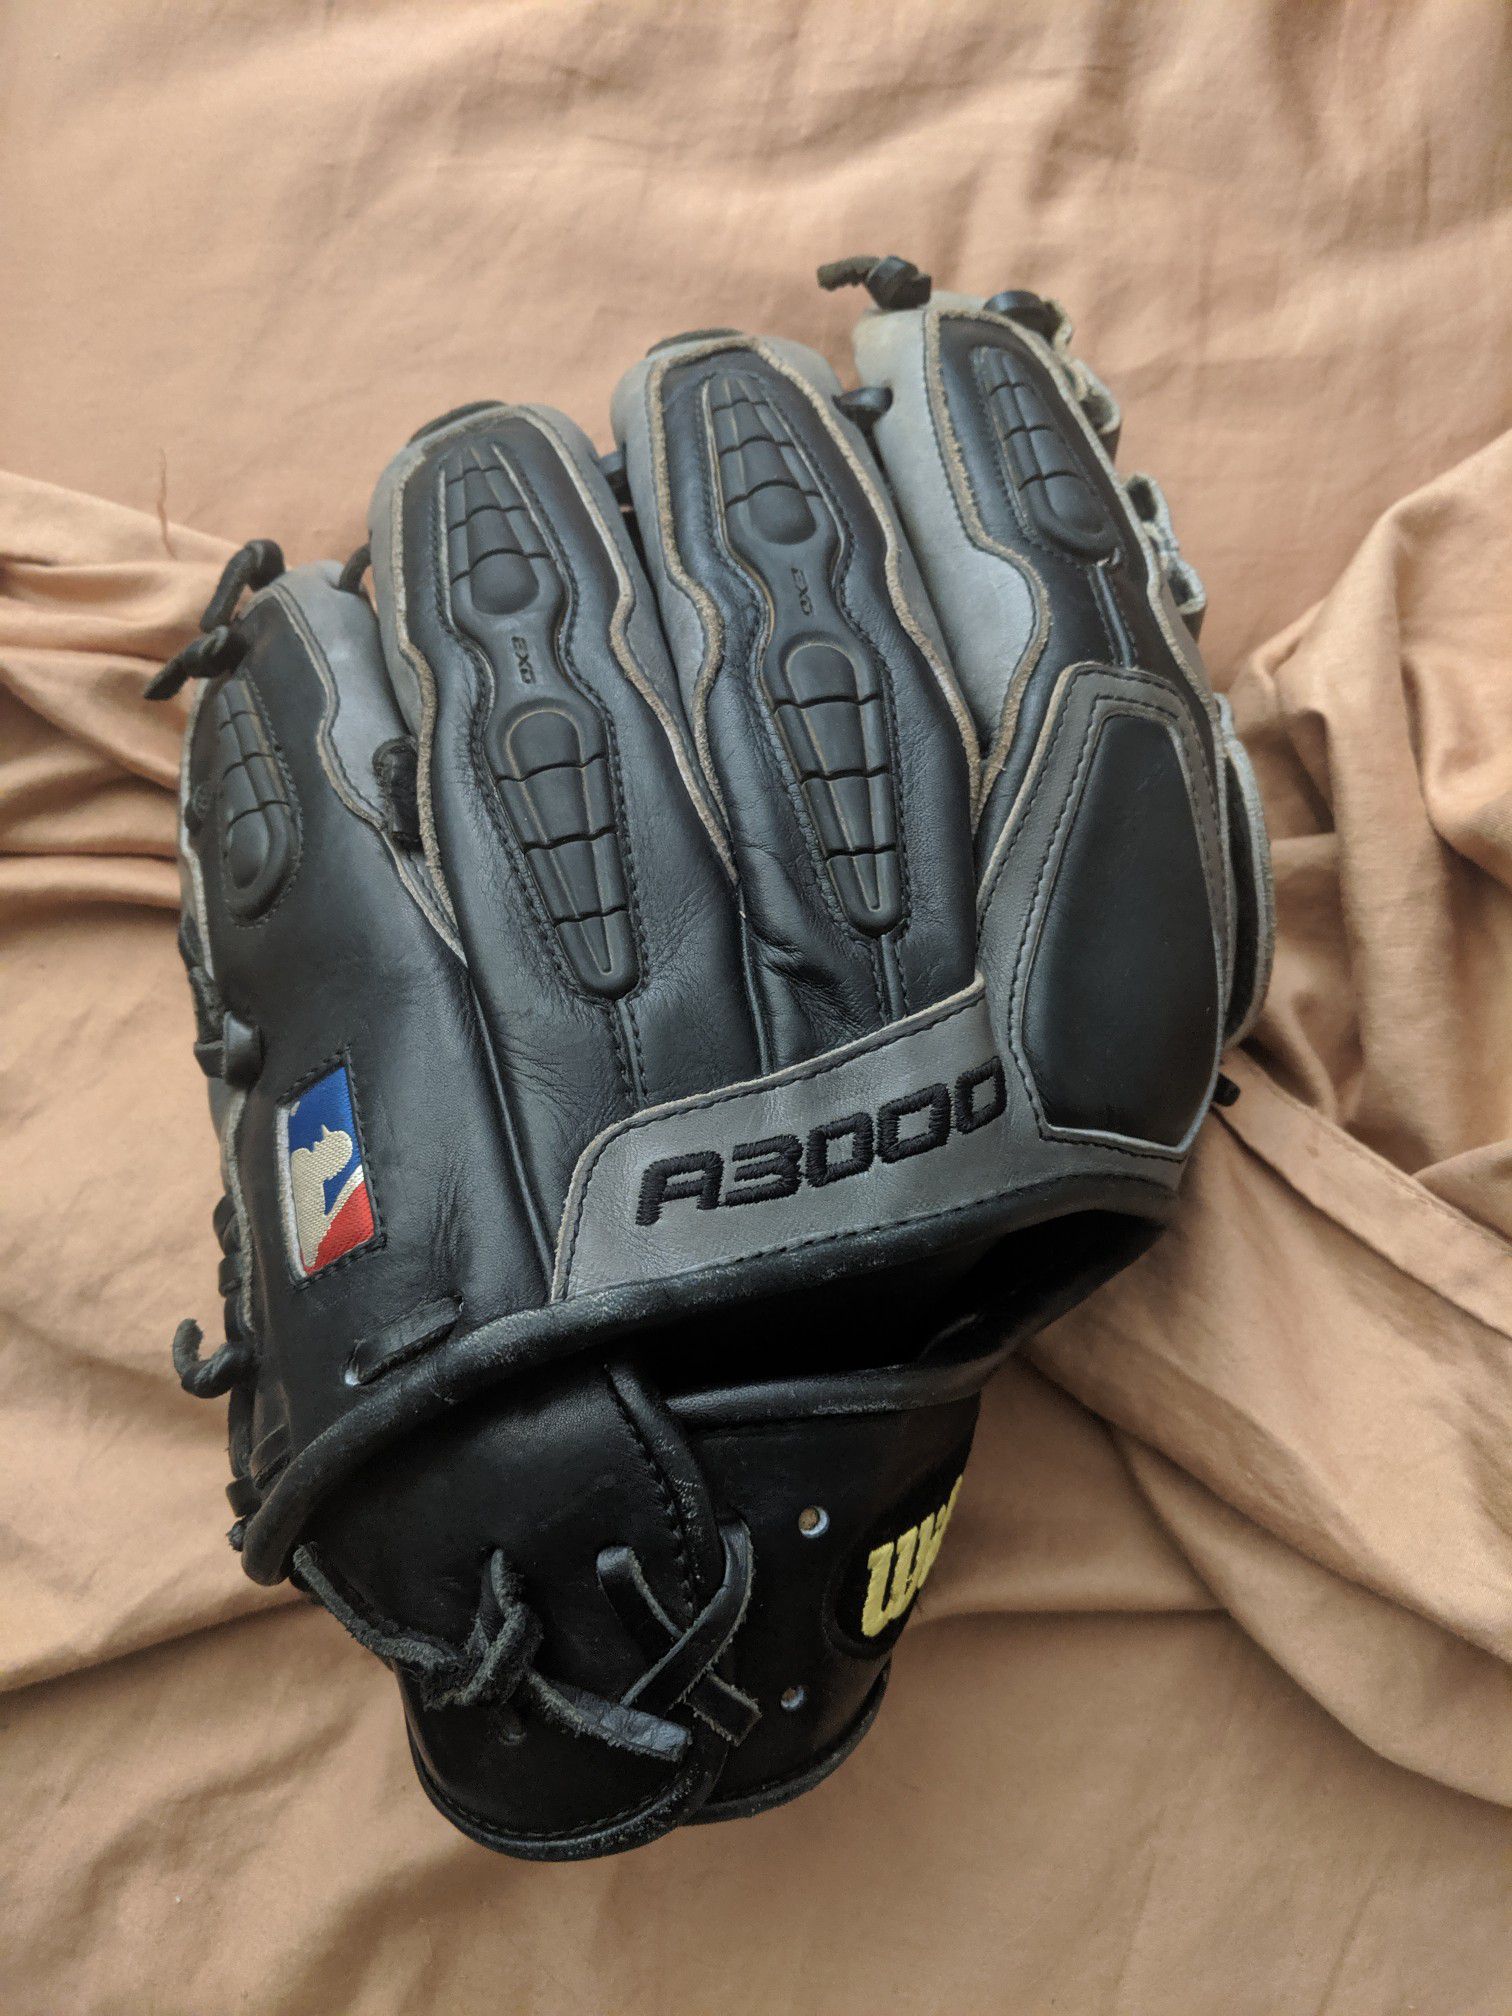 Wilson A3000 infield baseball glove